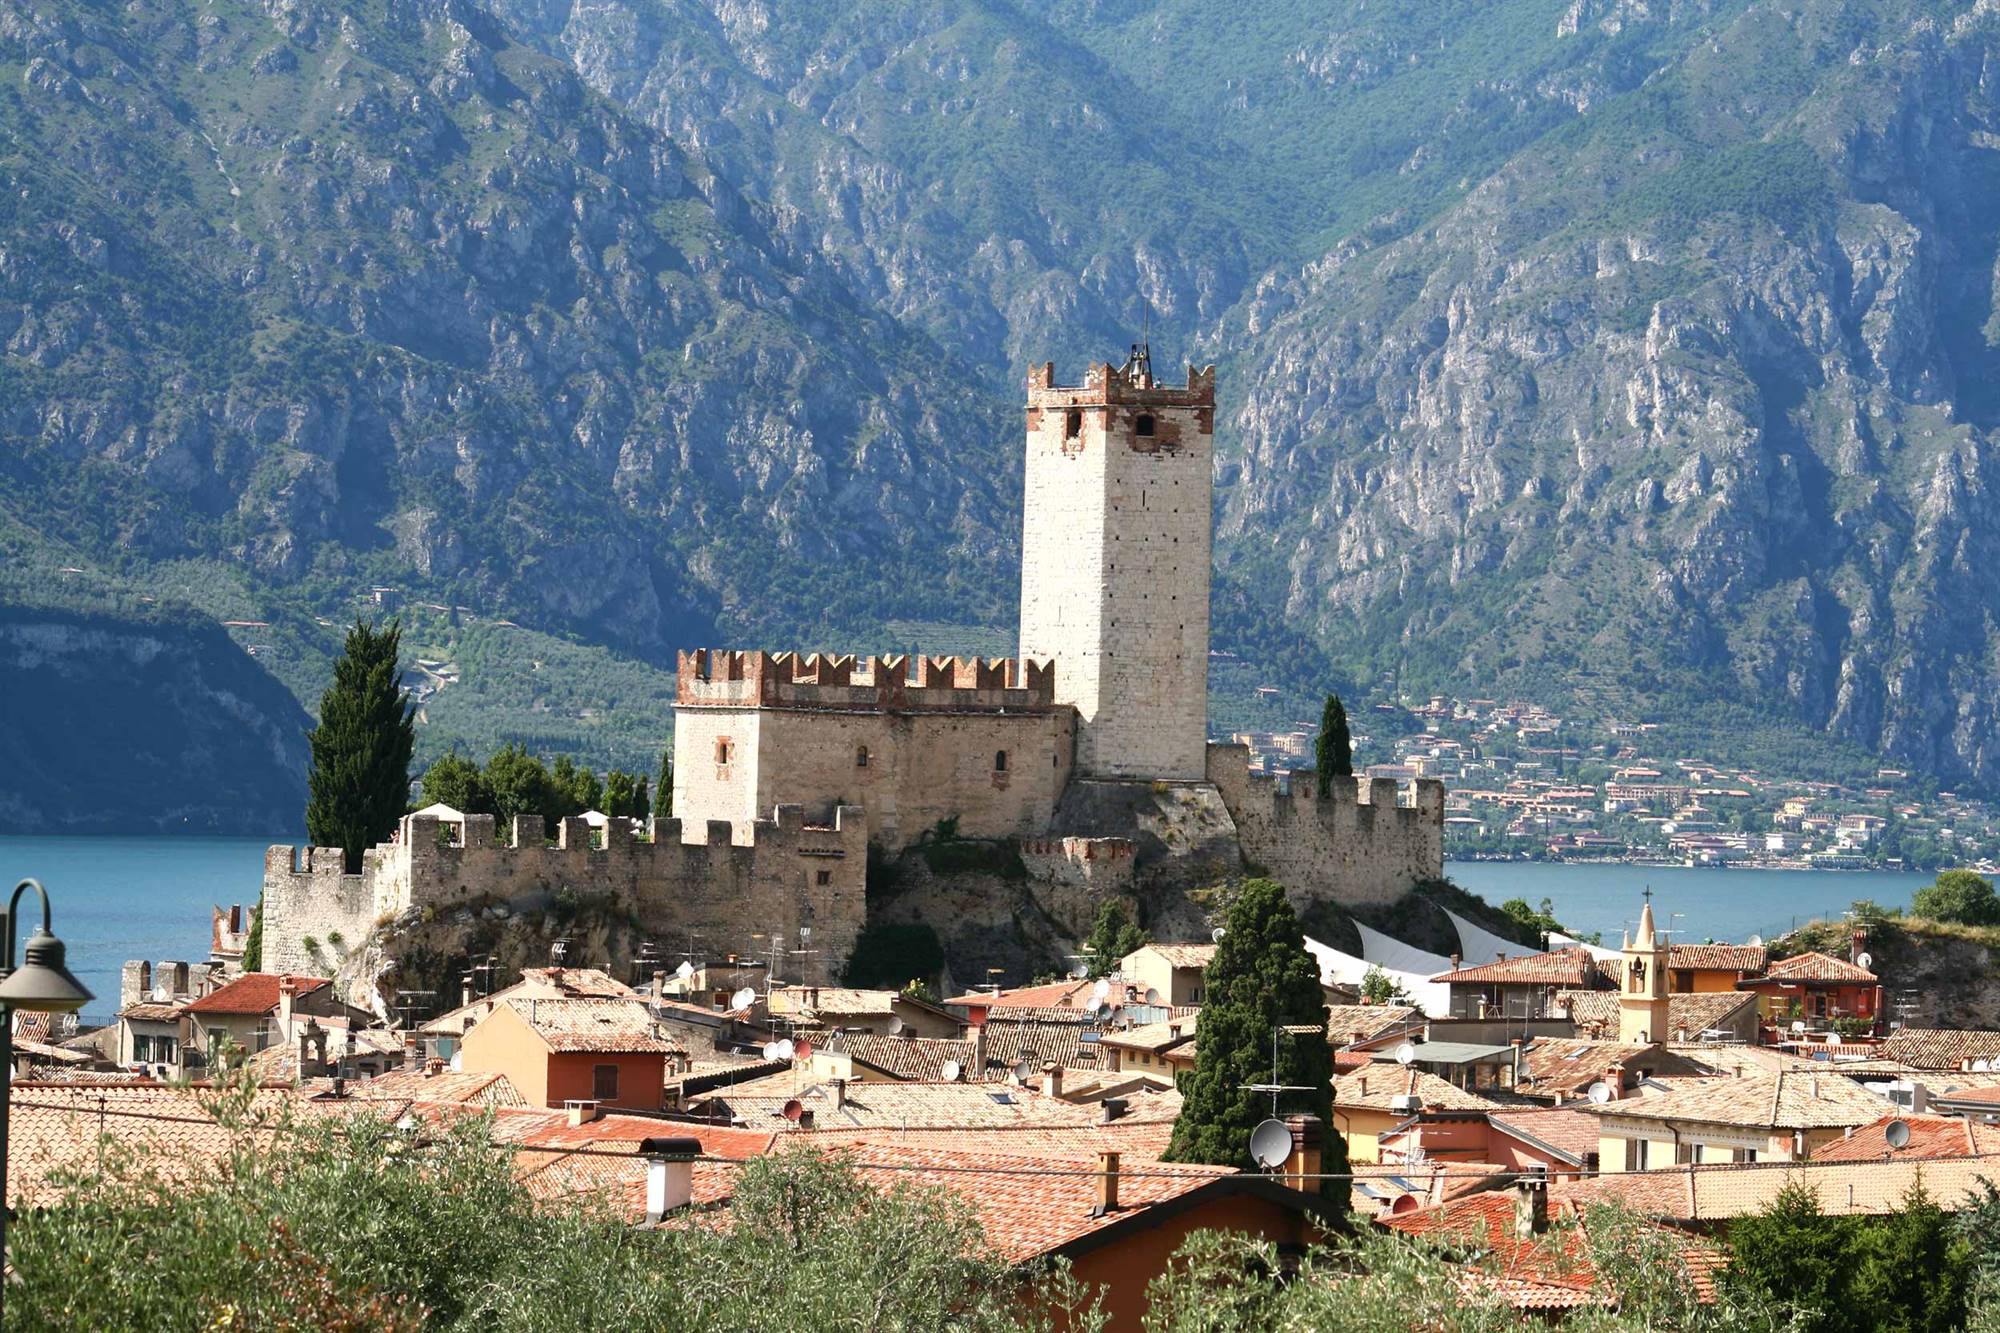 Visita guidata al centro storico Malcesine e al suo castello